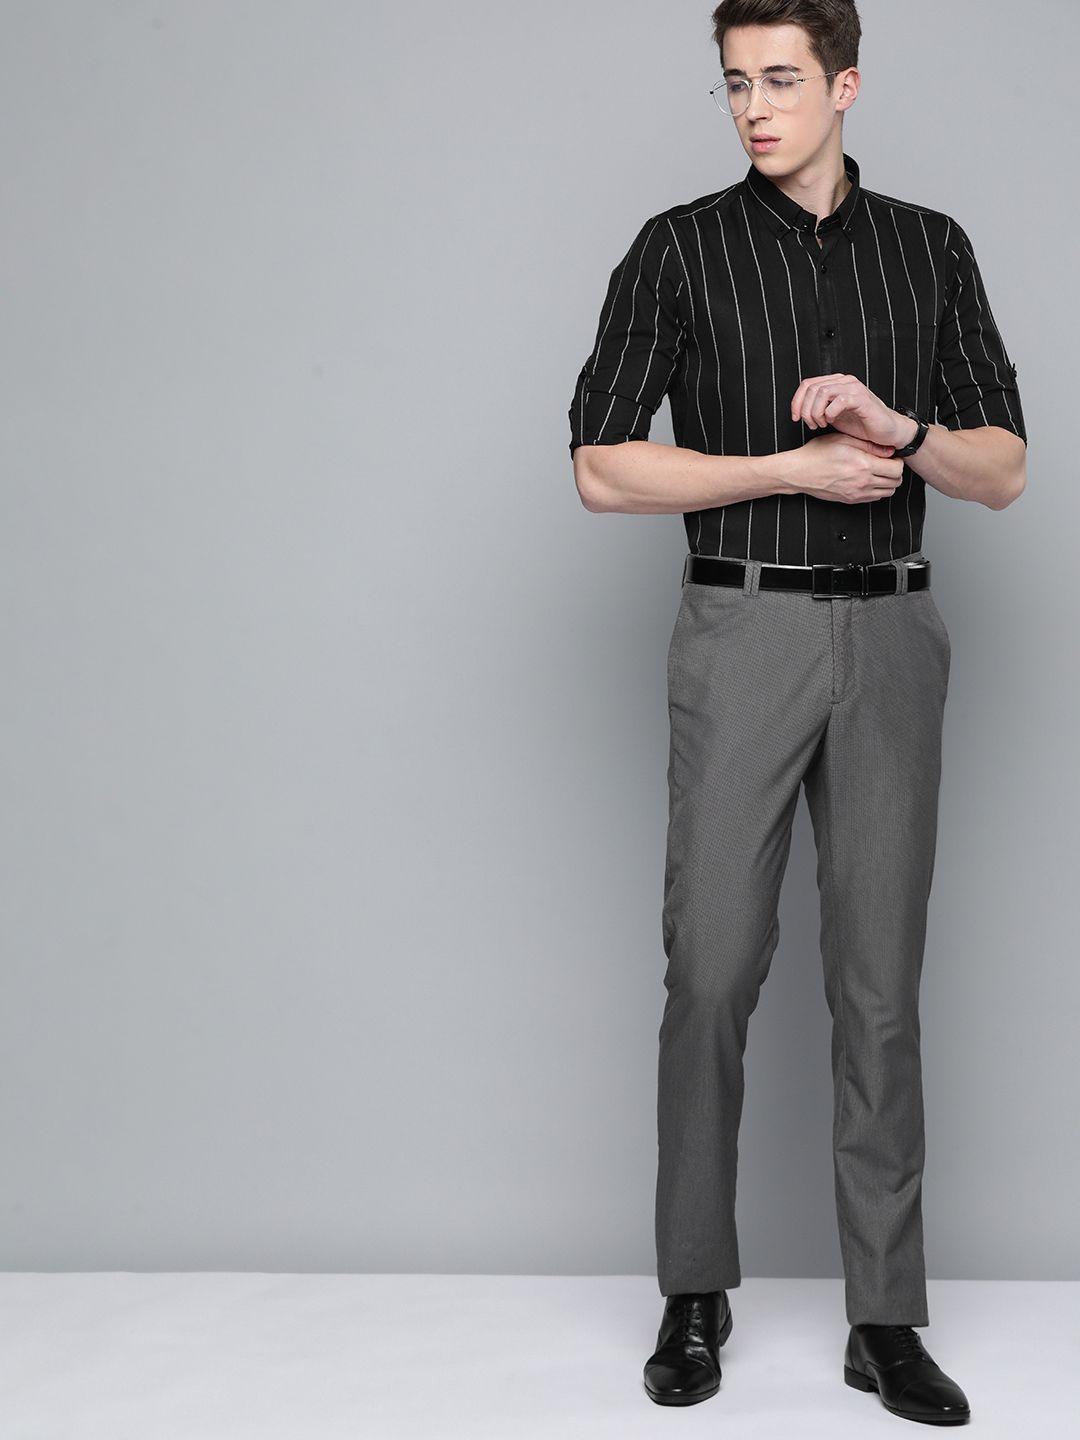 dennison men smart slim fit striped formal shirt